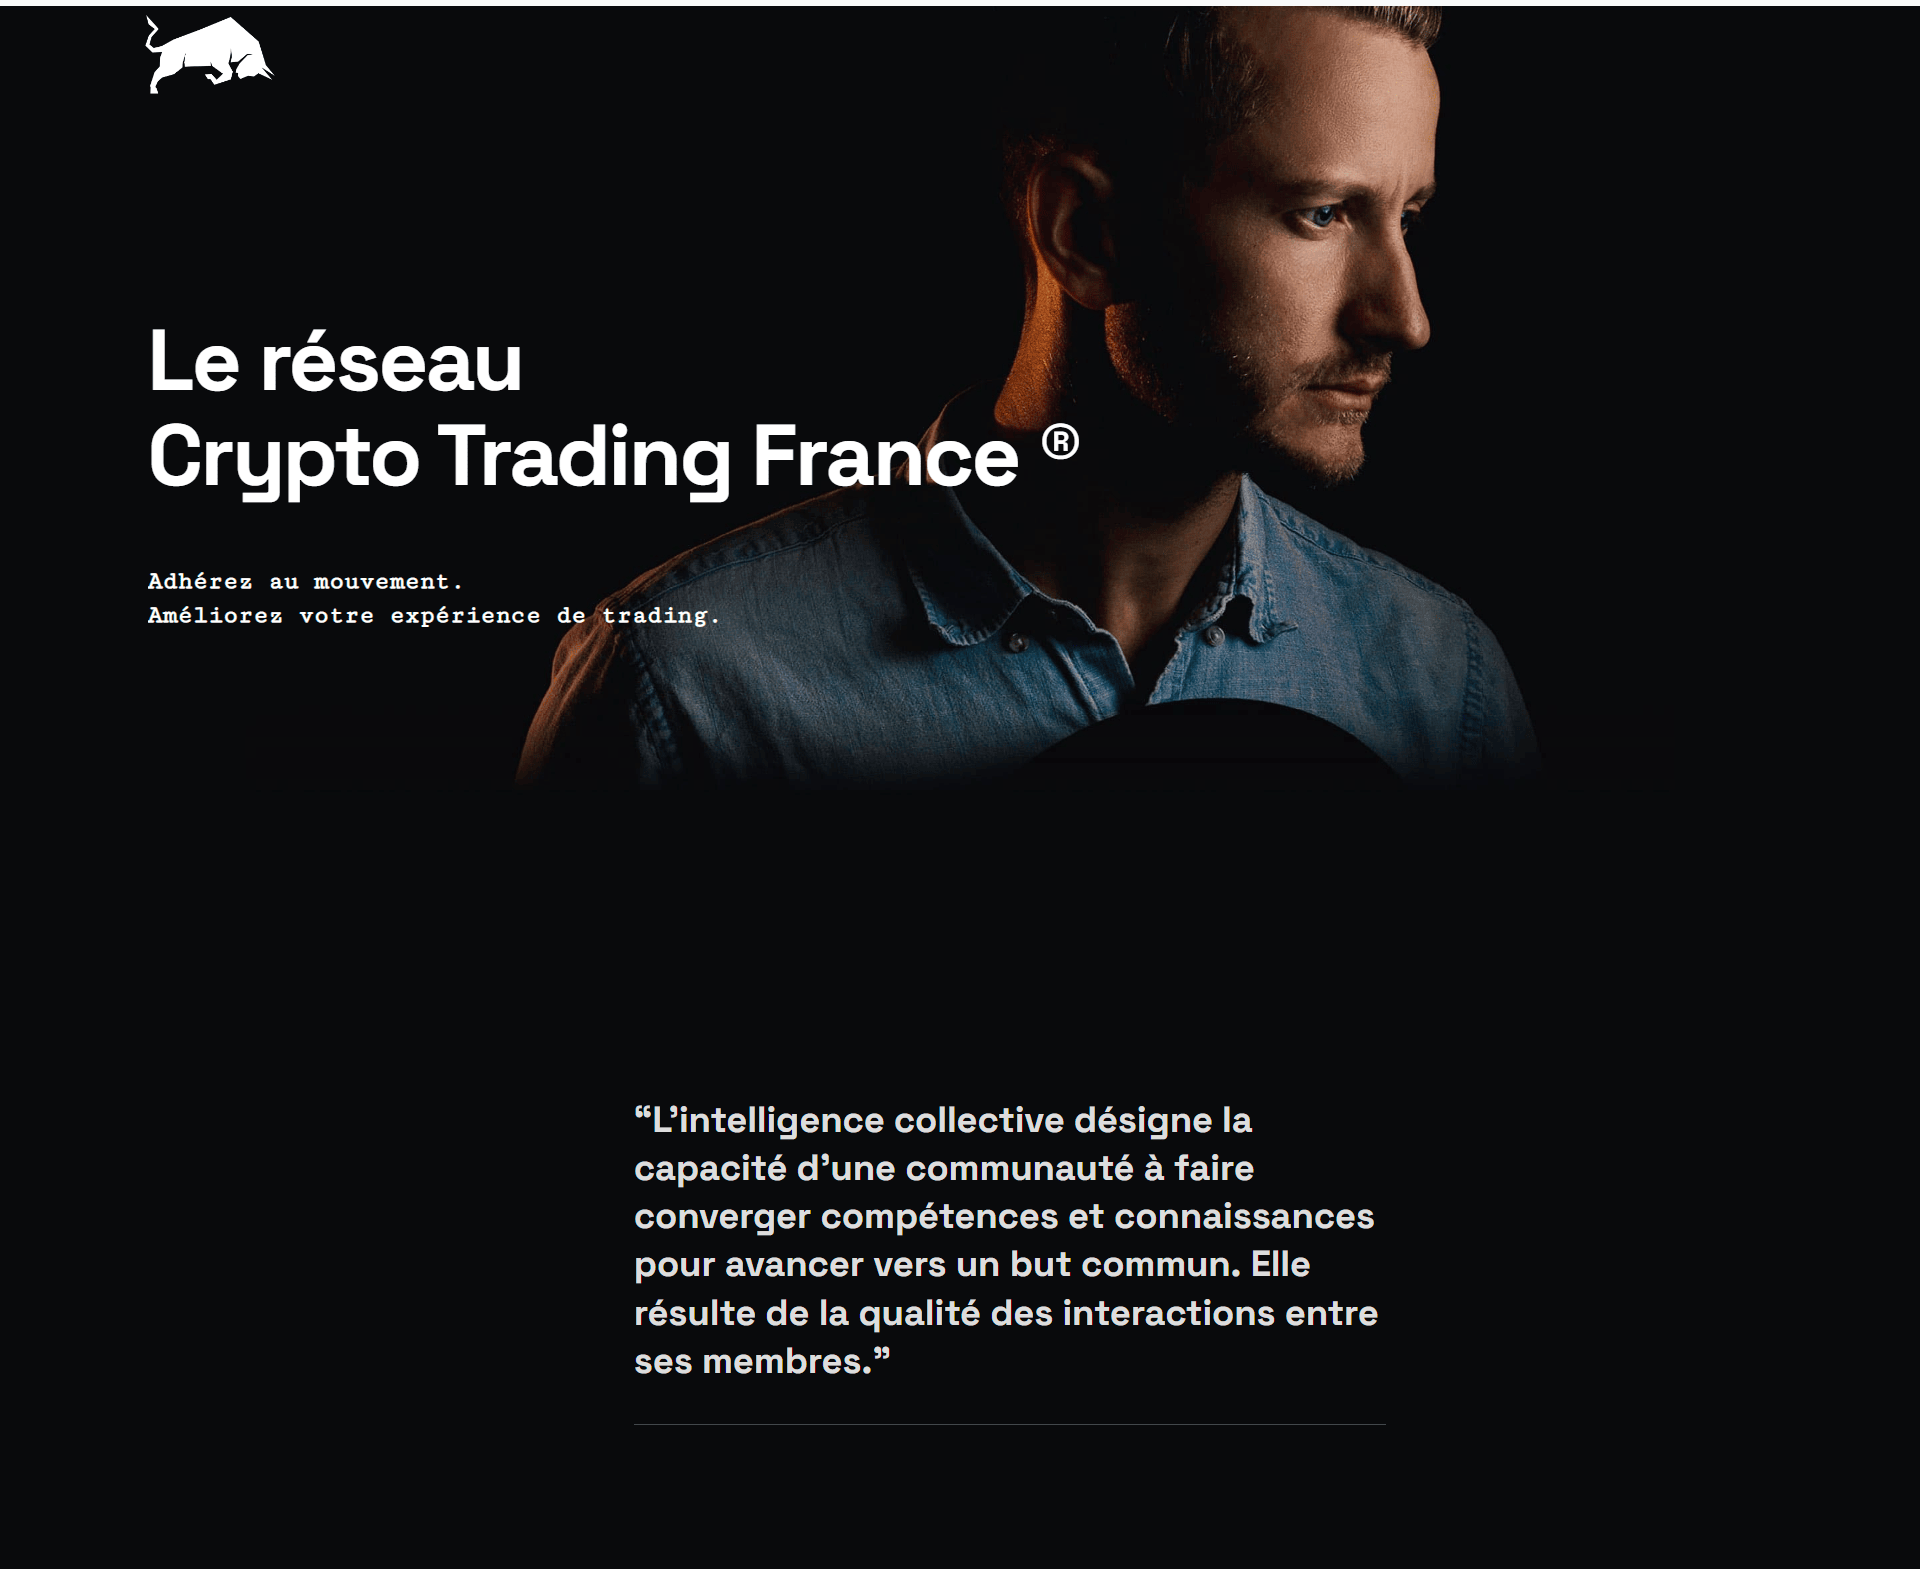 Le réseau Crypto Trading France